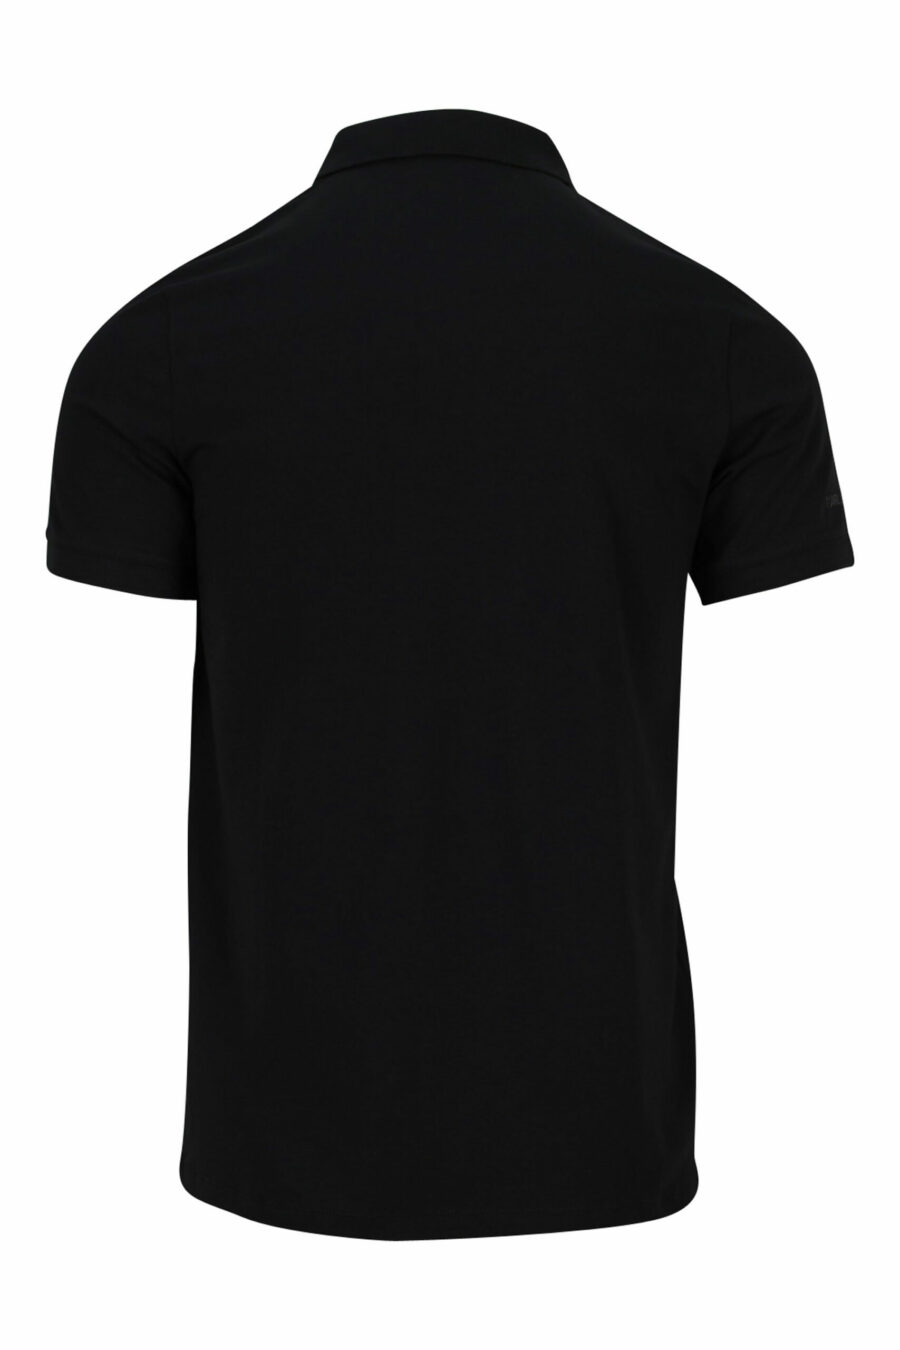 Schwarzes Poloshirt mit monochromem Mini-Logo - 4062226398633 1 skaliert